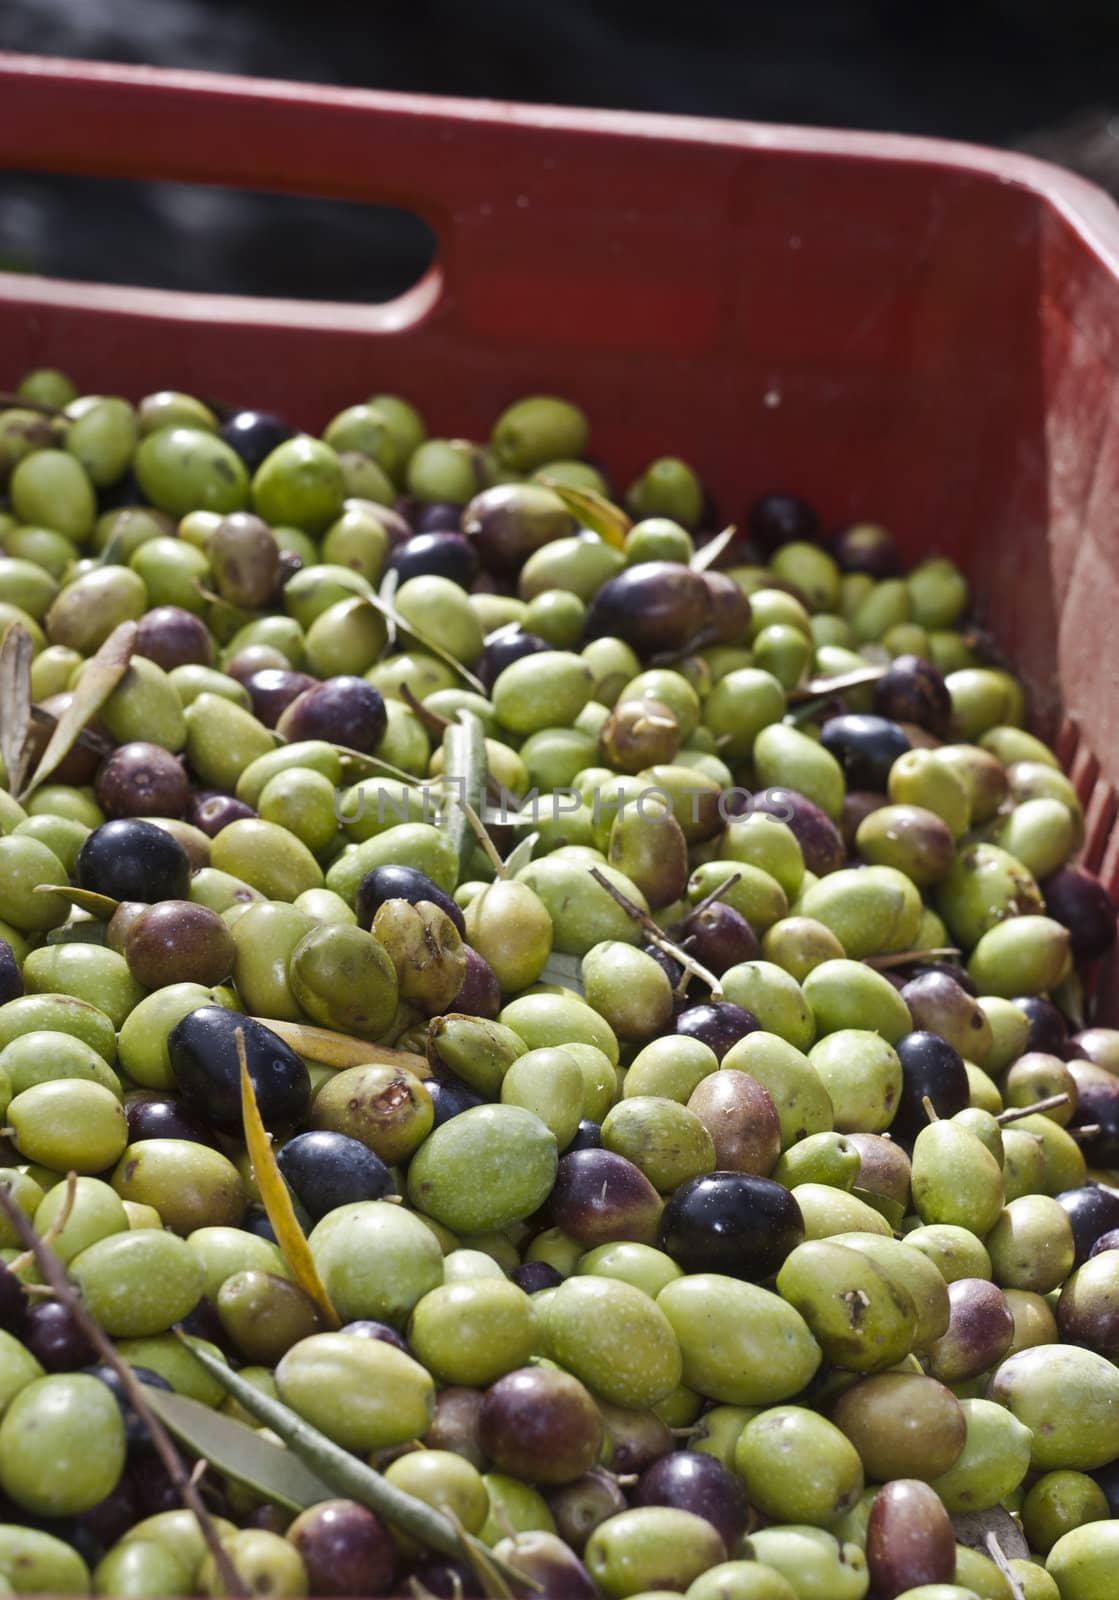 Olives in the box by gandolfocannatella